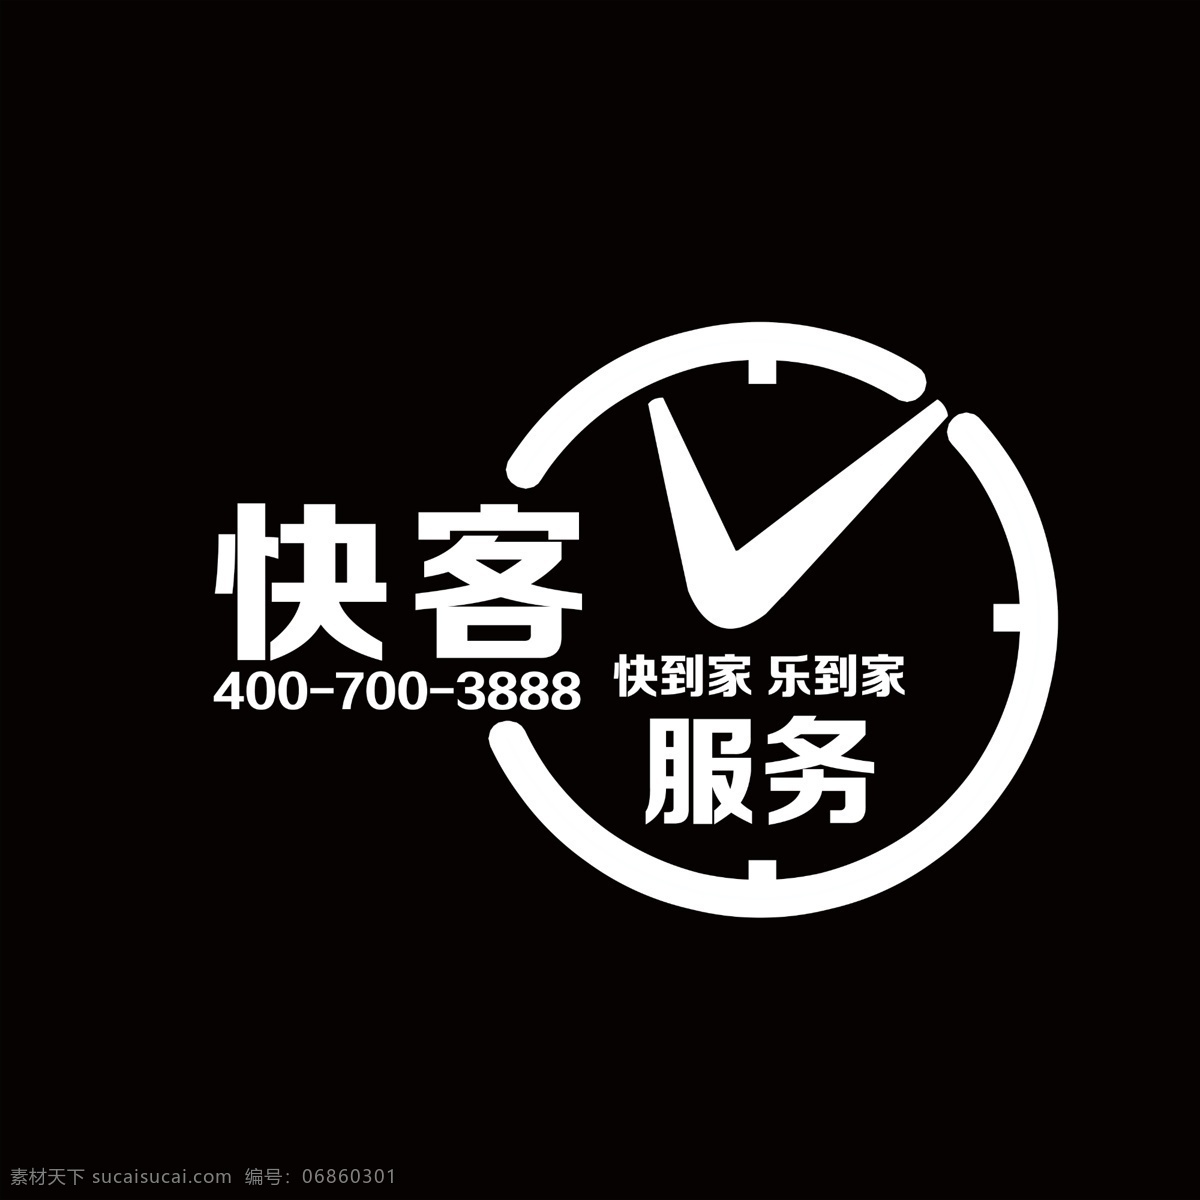 快客服务 标志 logo 指针 钟 失量图 psd分层 dm宣传单